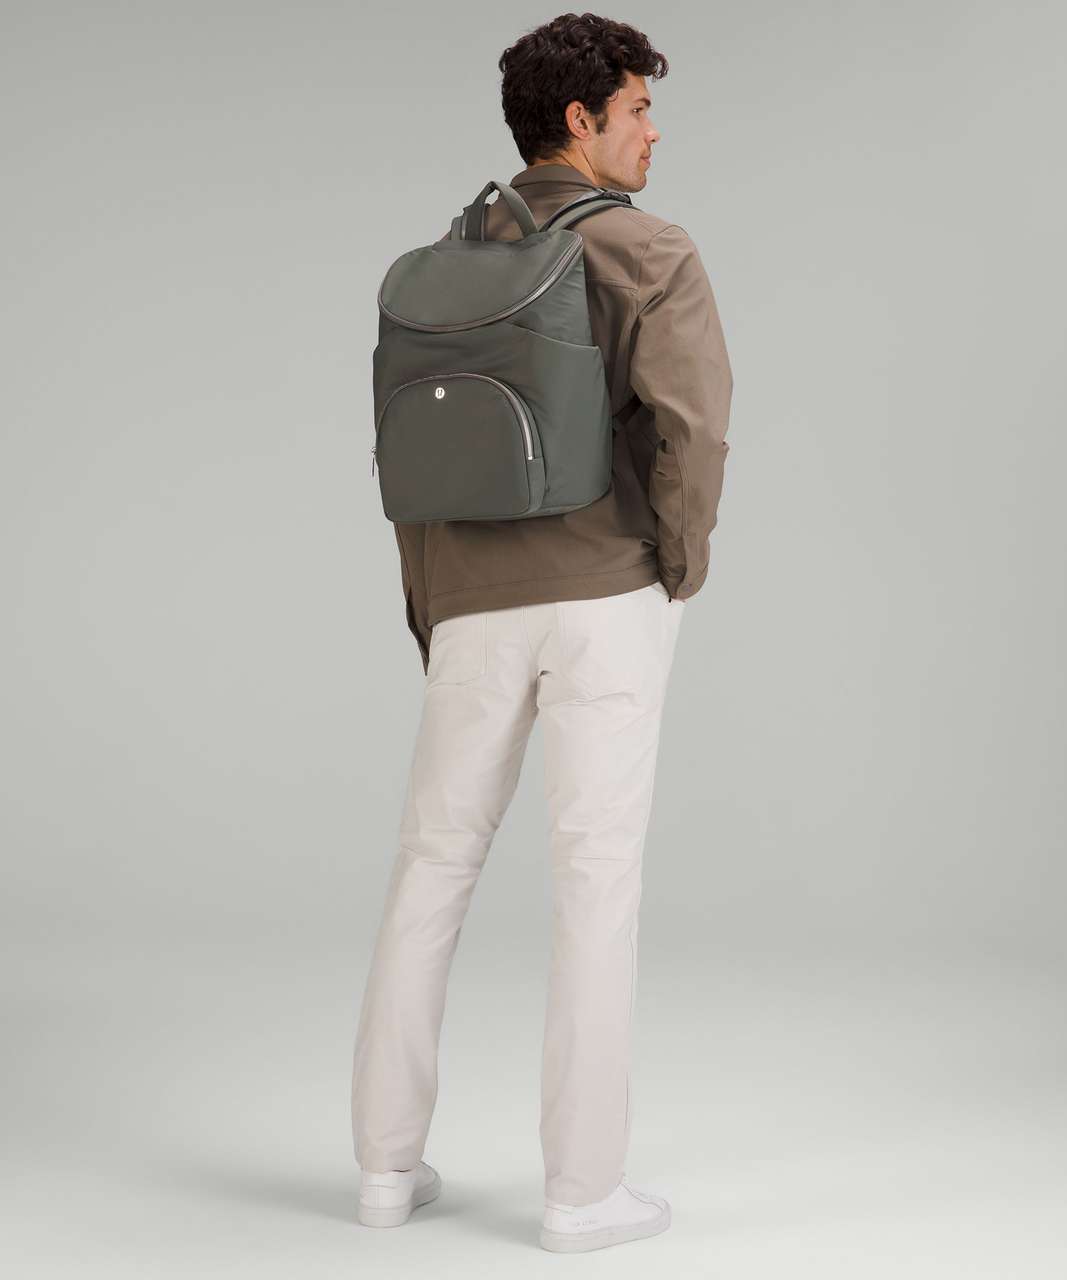 Lululemon New Parent Backpack 17L - Grey Sage / Silver Drop